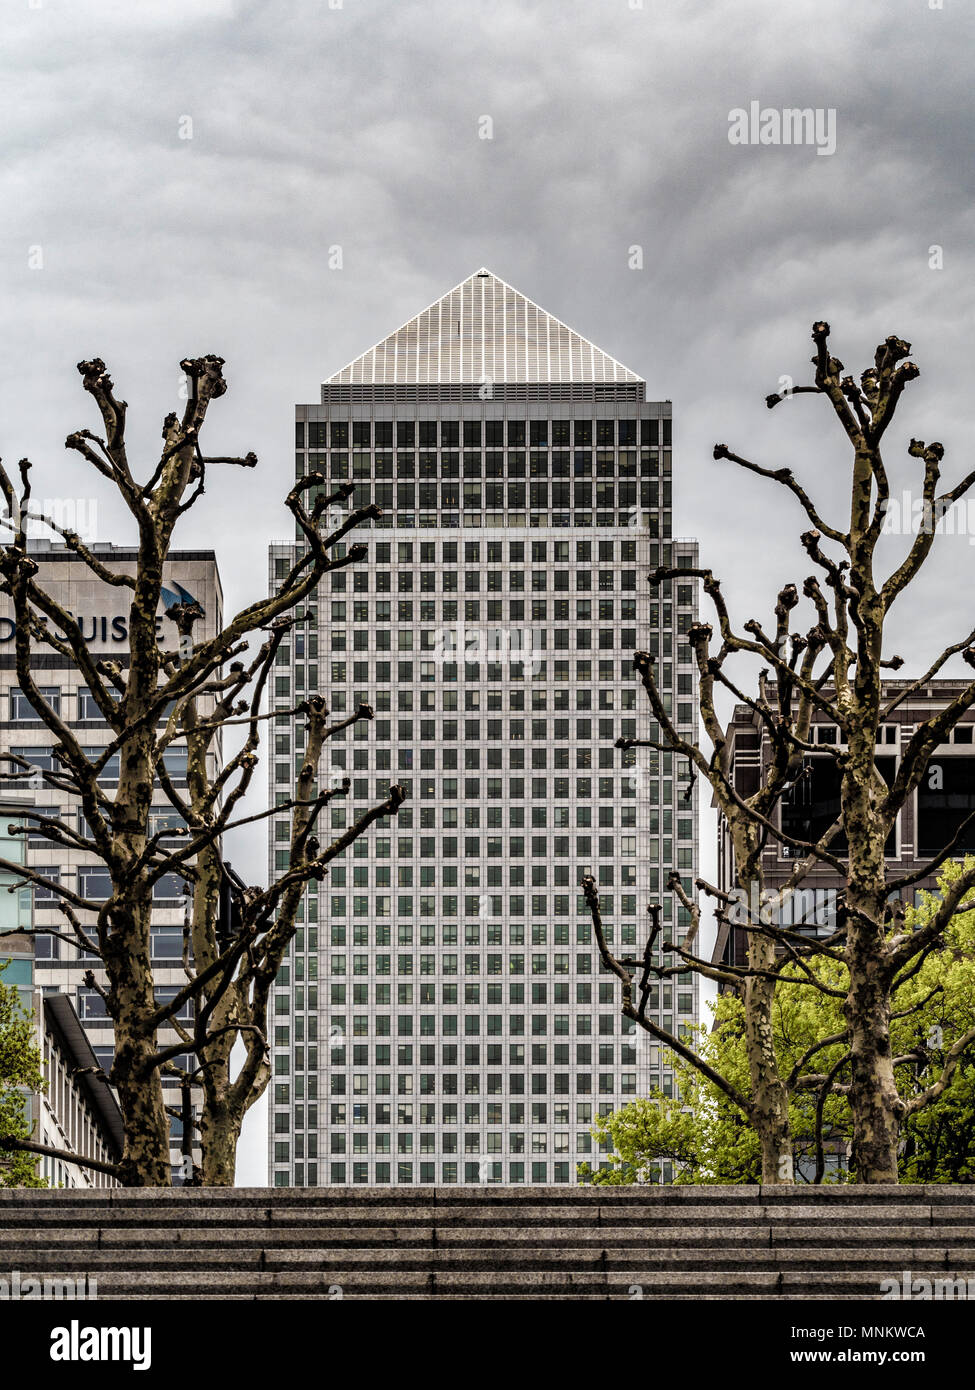 One Canada Square, Canary Wharf (Tower) eines Wolkenkratzers in Canary Wharf, London. 770 Fuß (235 m) hoch mit 50 Stockwerken. Von Cesar Pelli, Adamson konzipiert Stockfoto